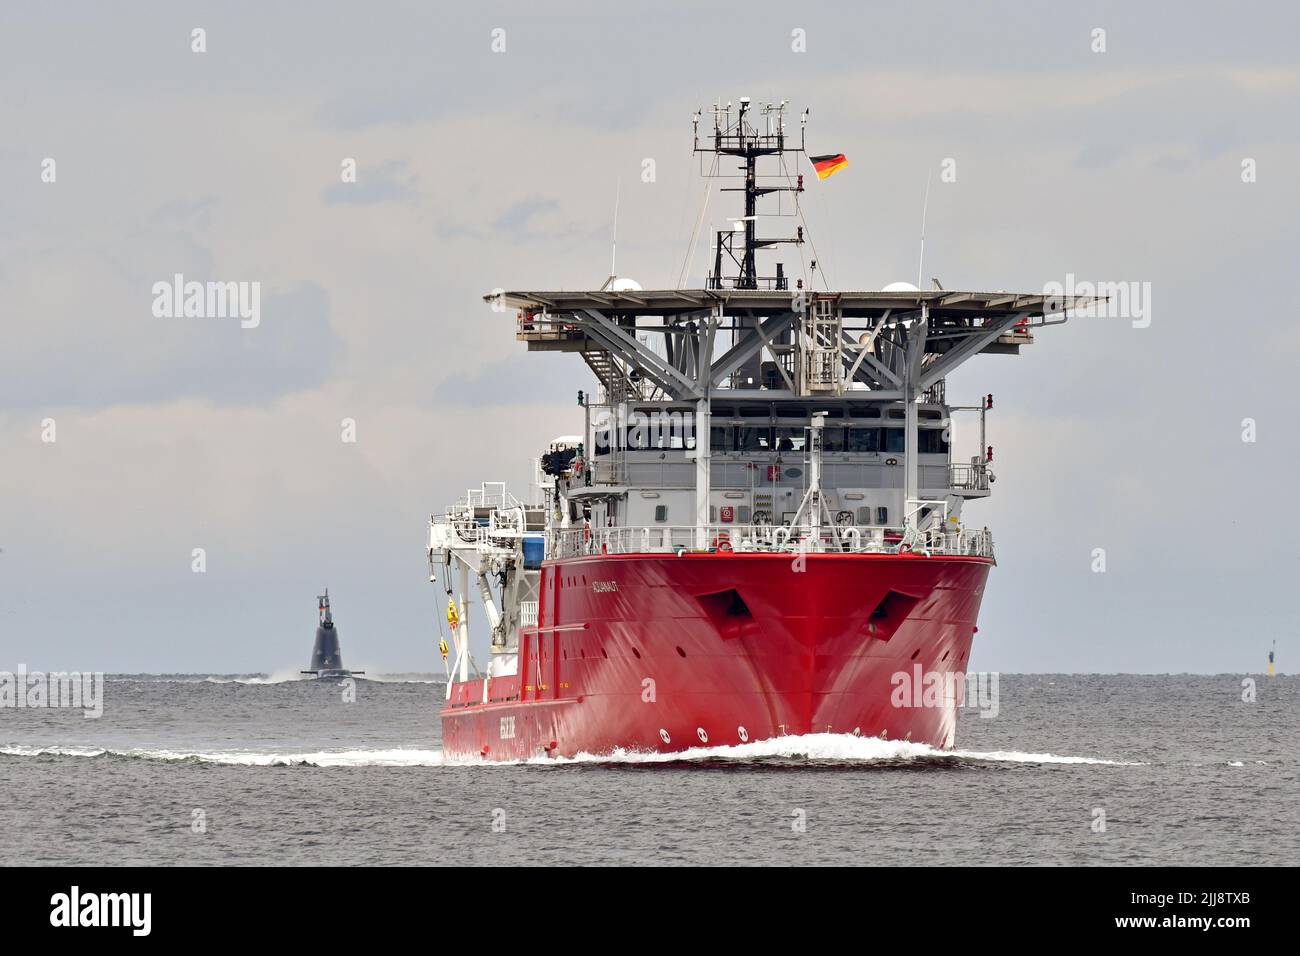 Standby Safety Vessel AQUANAUT in arrivo per Kiel, accompagnato da un sottomarino TKMS. Entrambe le navi ritornano dai natanti sottomarini. Foto Stock